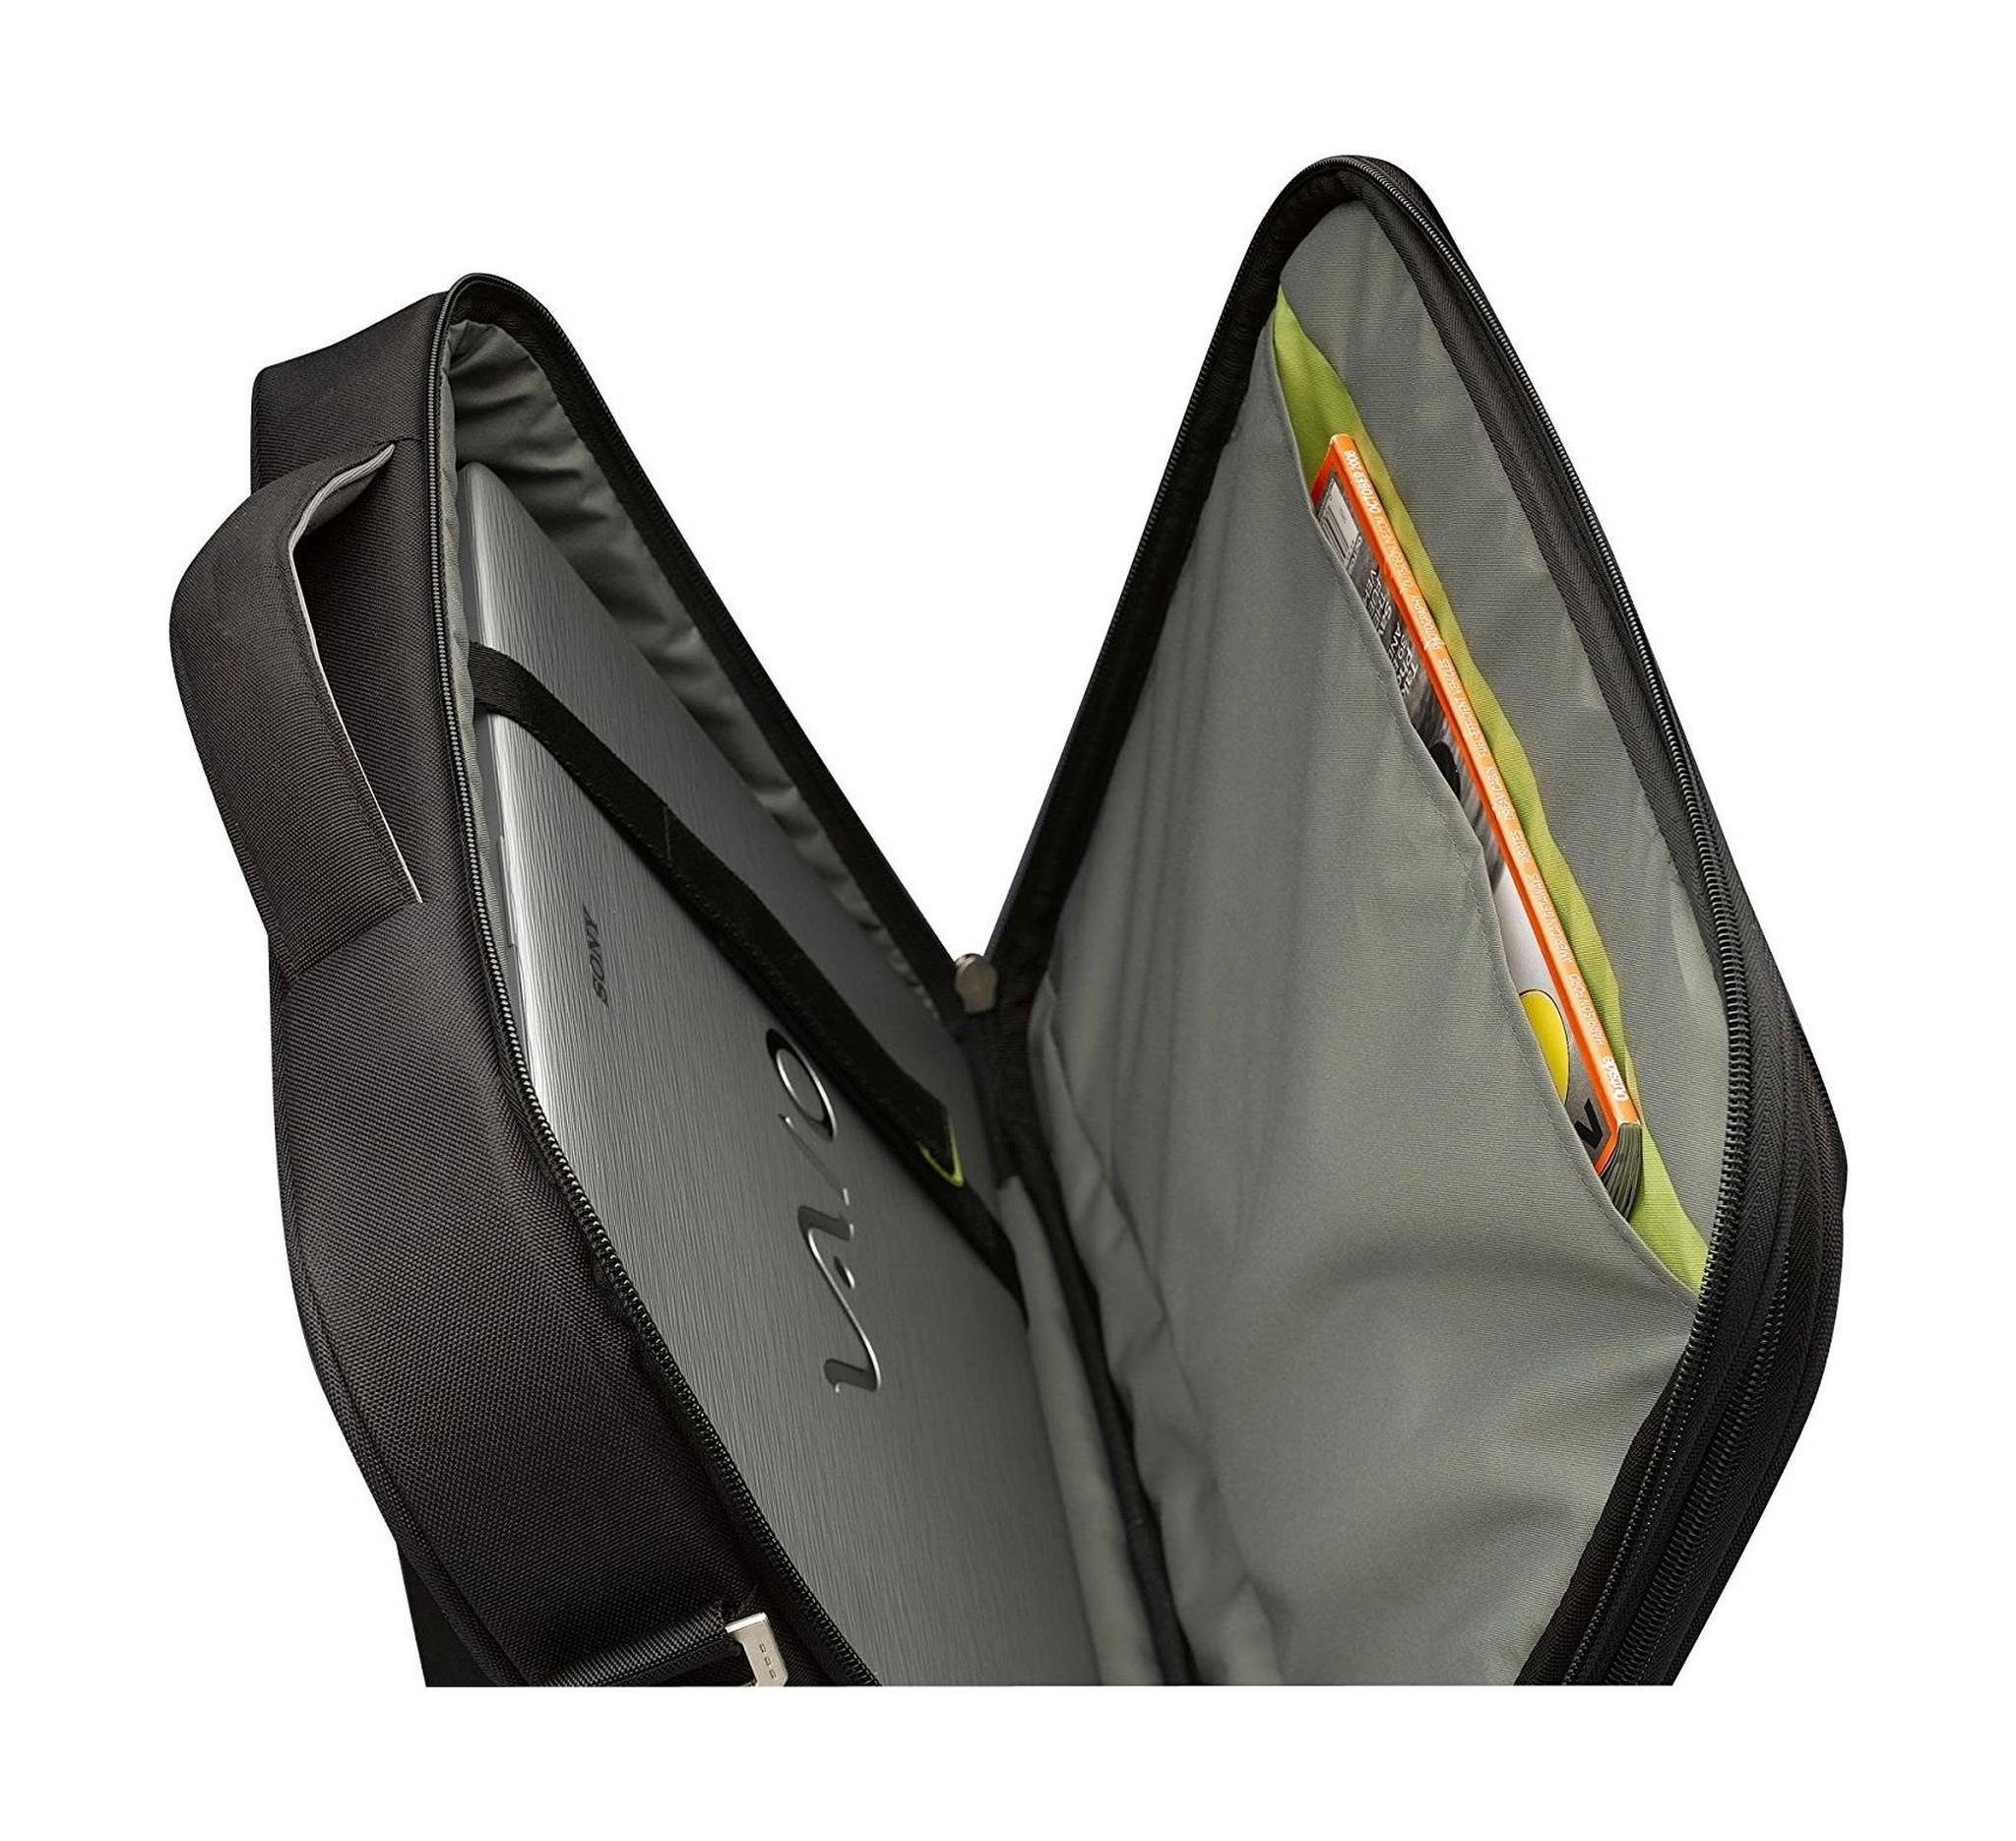 حقيبة للكمبيوتر المحمول من كيس لوجك لشاشة بحجم ١٦بوصة - اللون الأسود